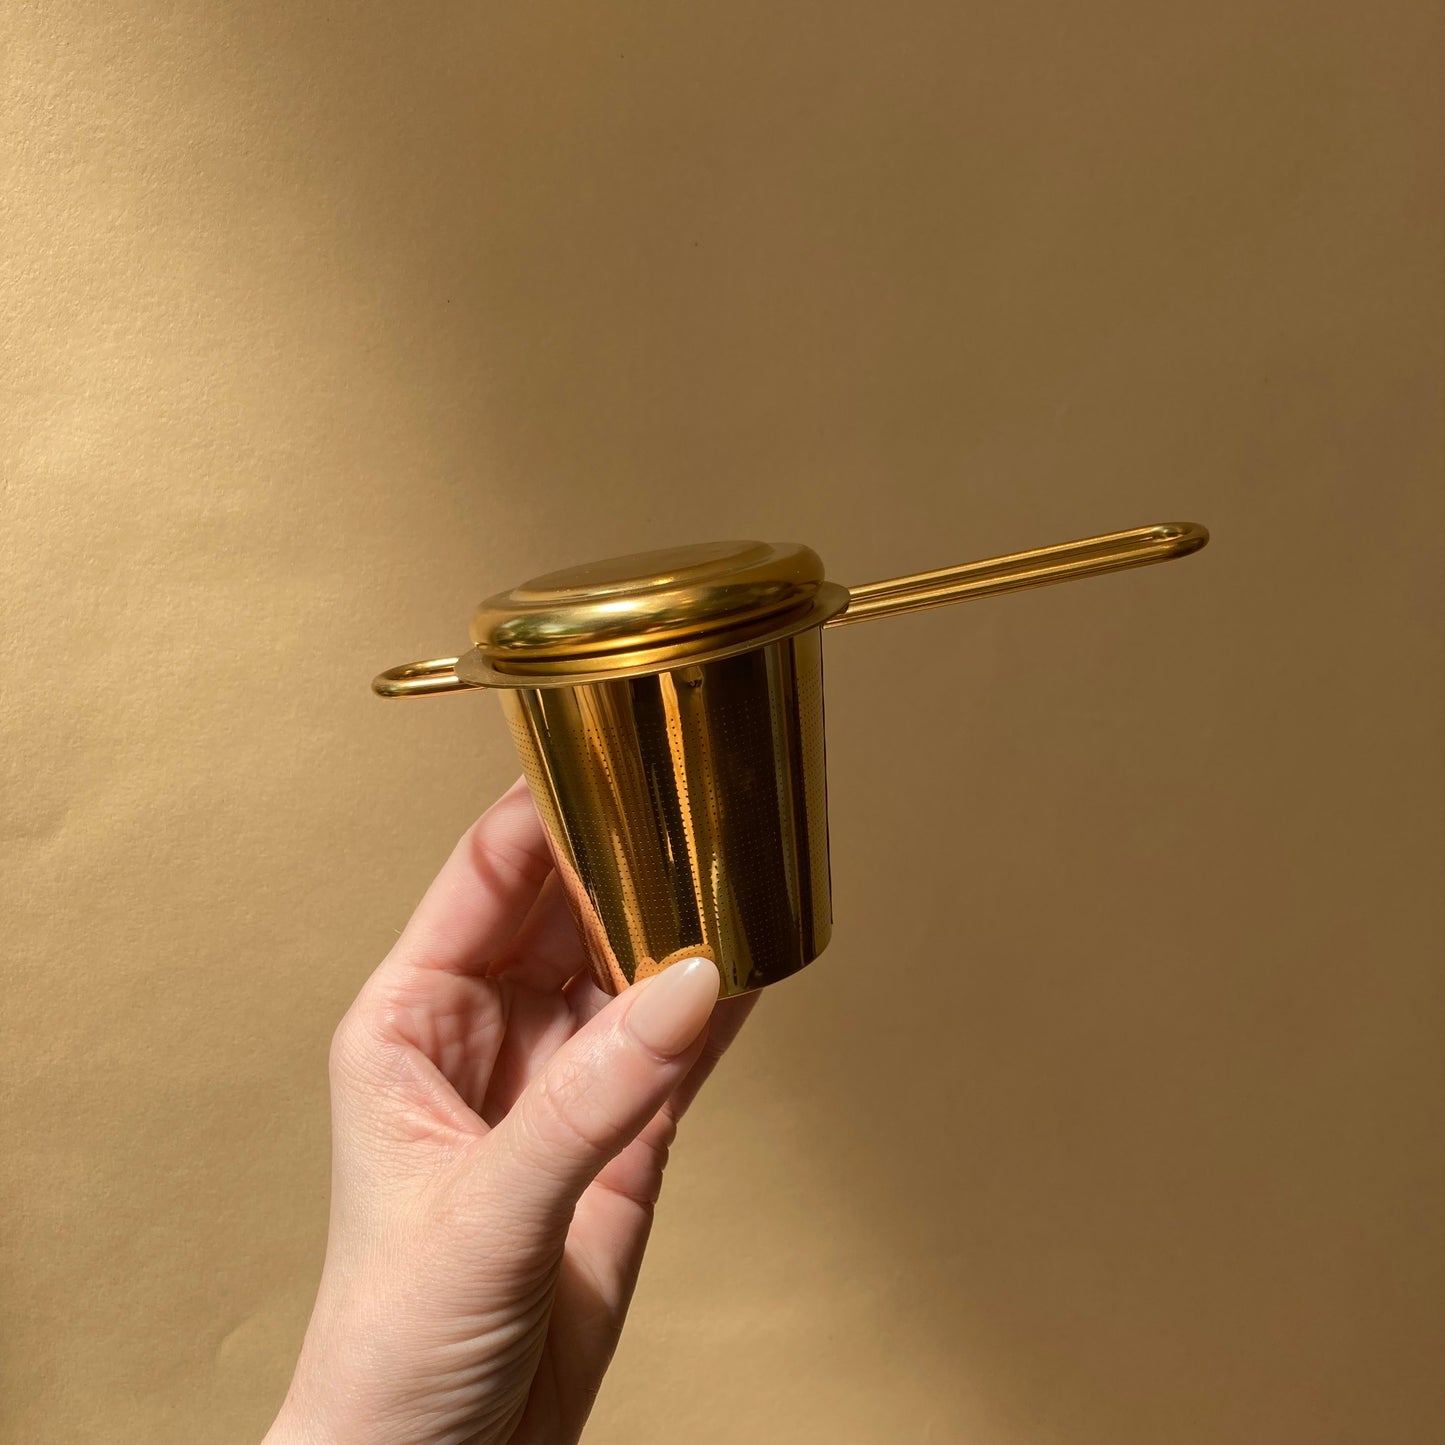 gold tea strainer basket